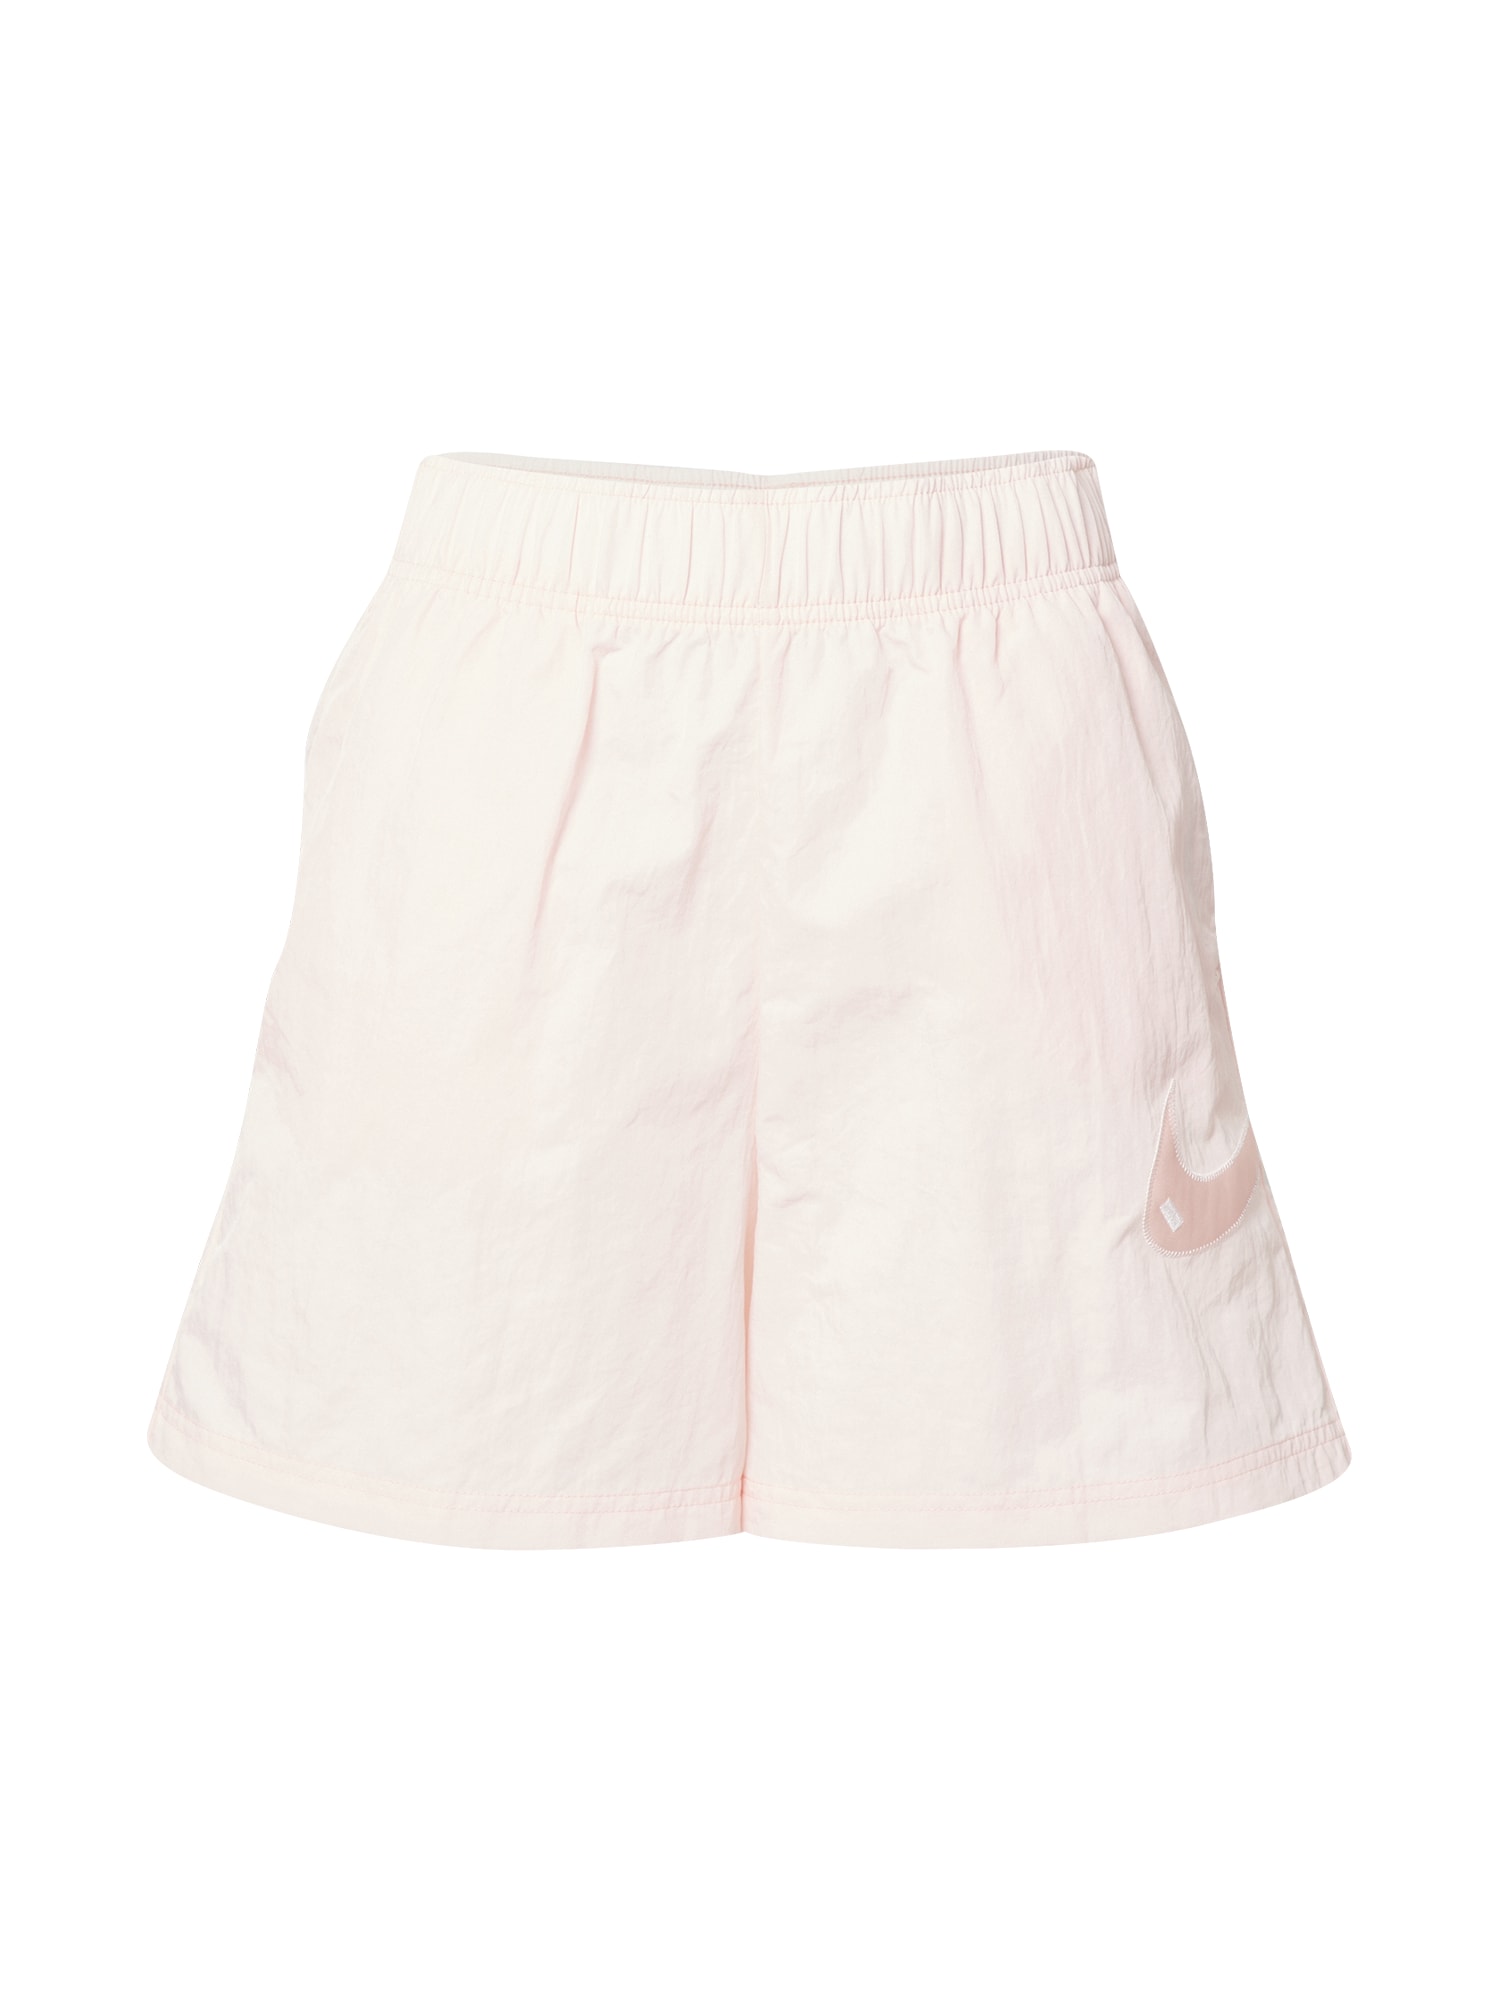 Nohavice broskyňová svetloružová biela Nike Sportswear